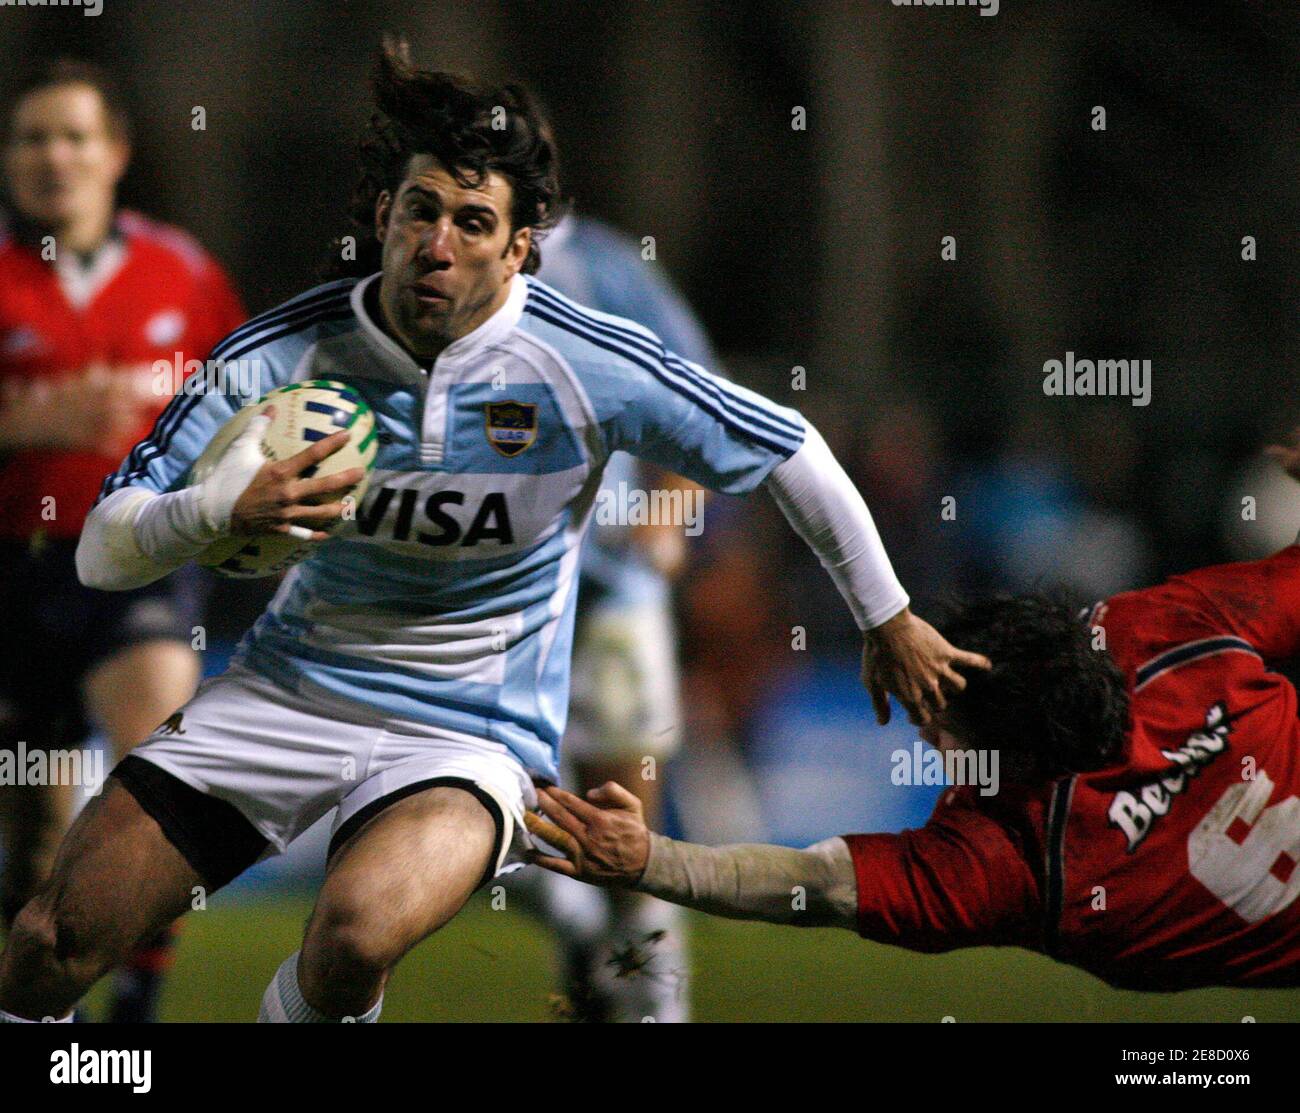 Ignacio Corleto (L) de los Pumas de Argentina elude a Andres Palacios de  Chile durante su amistoso partido de rugby jugado en Buenos Aires, 4 de  agosto de 2007. Argentina debutará en